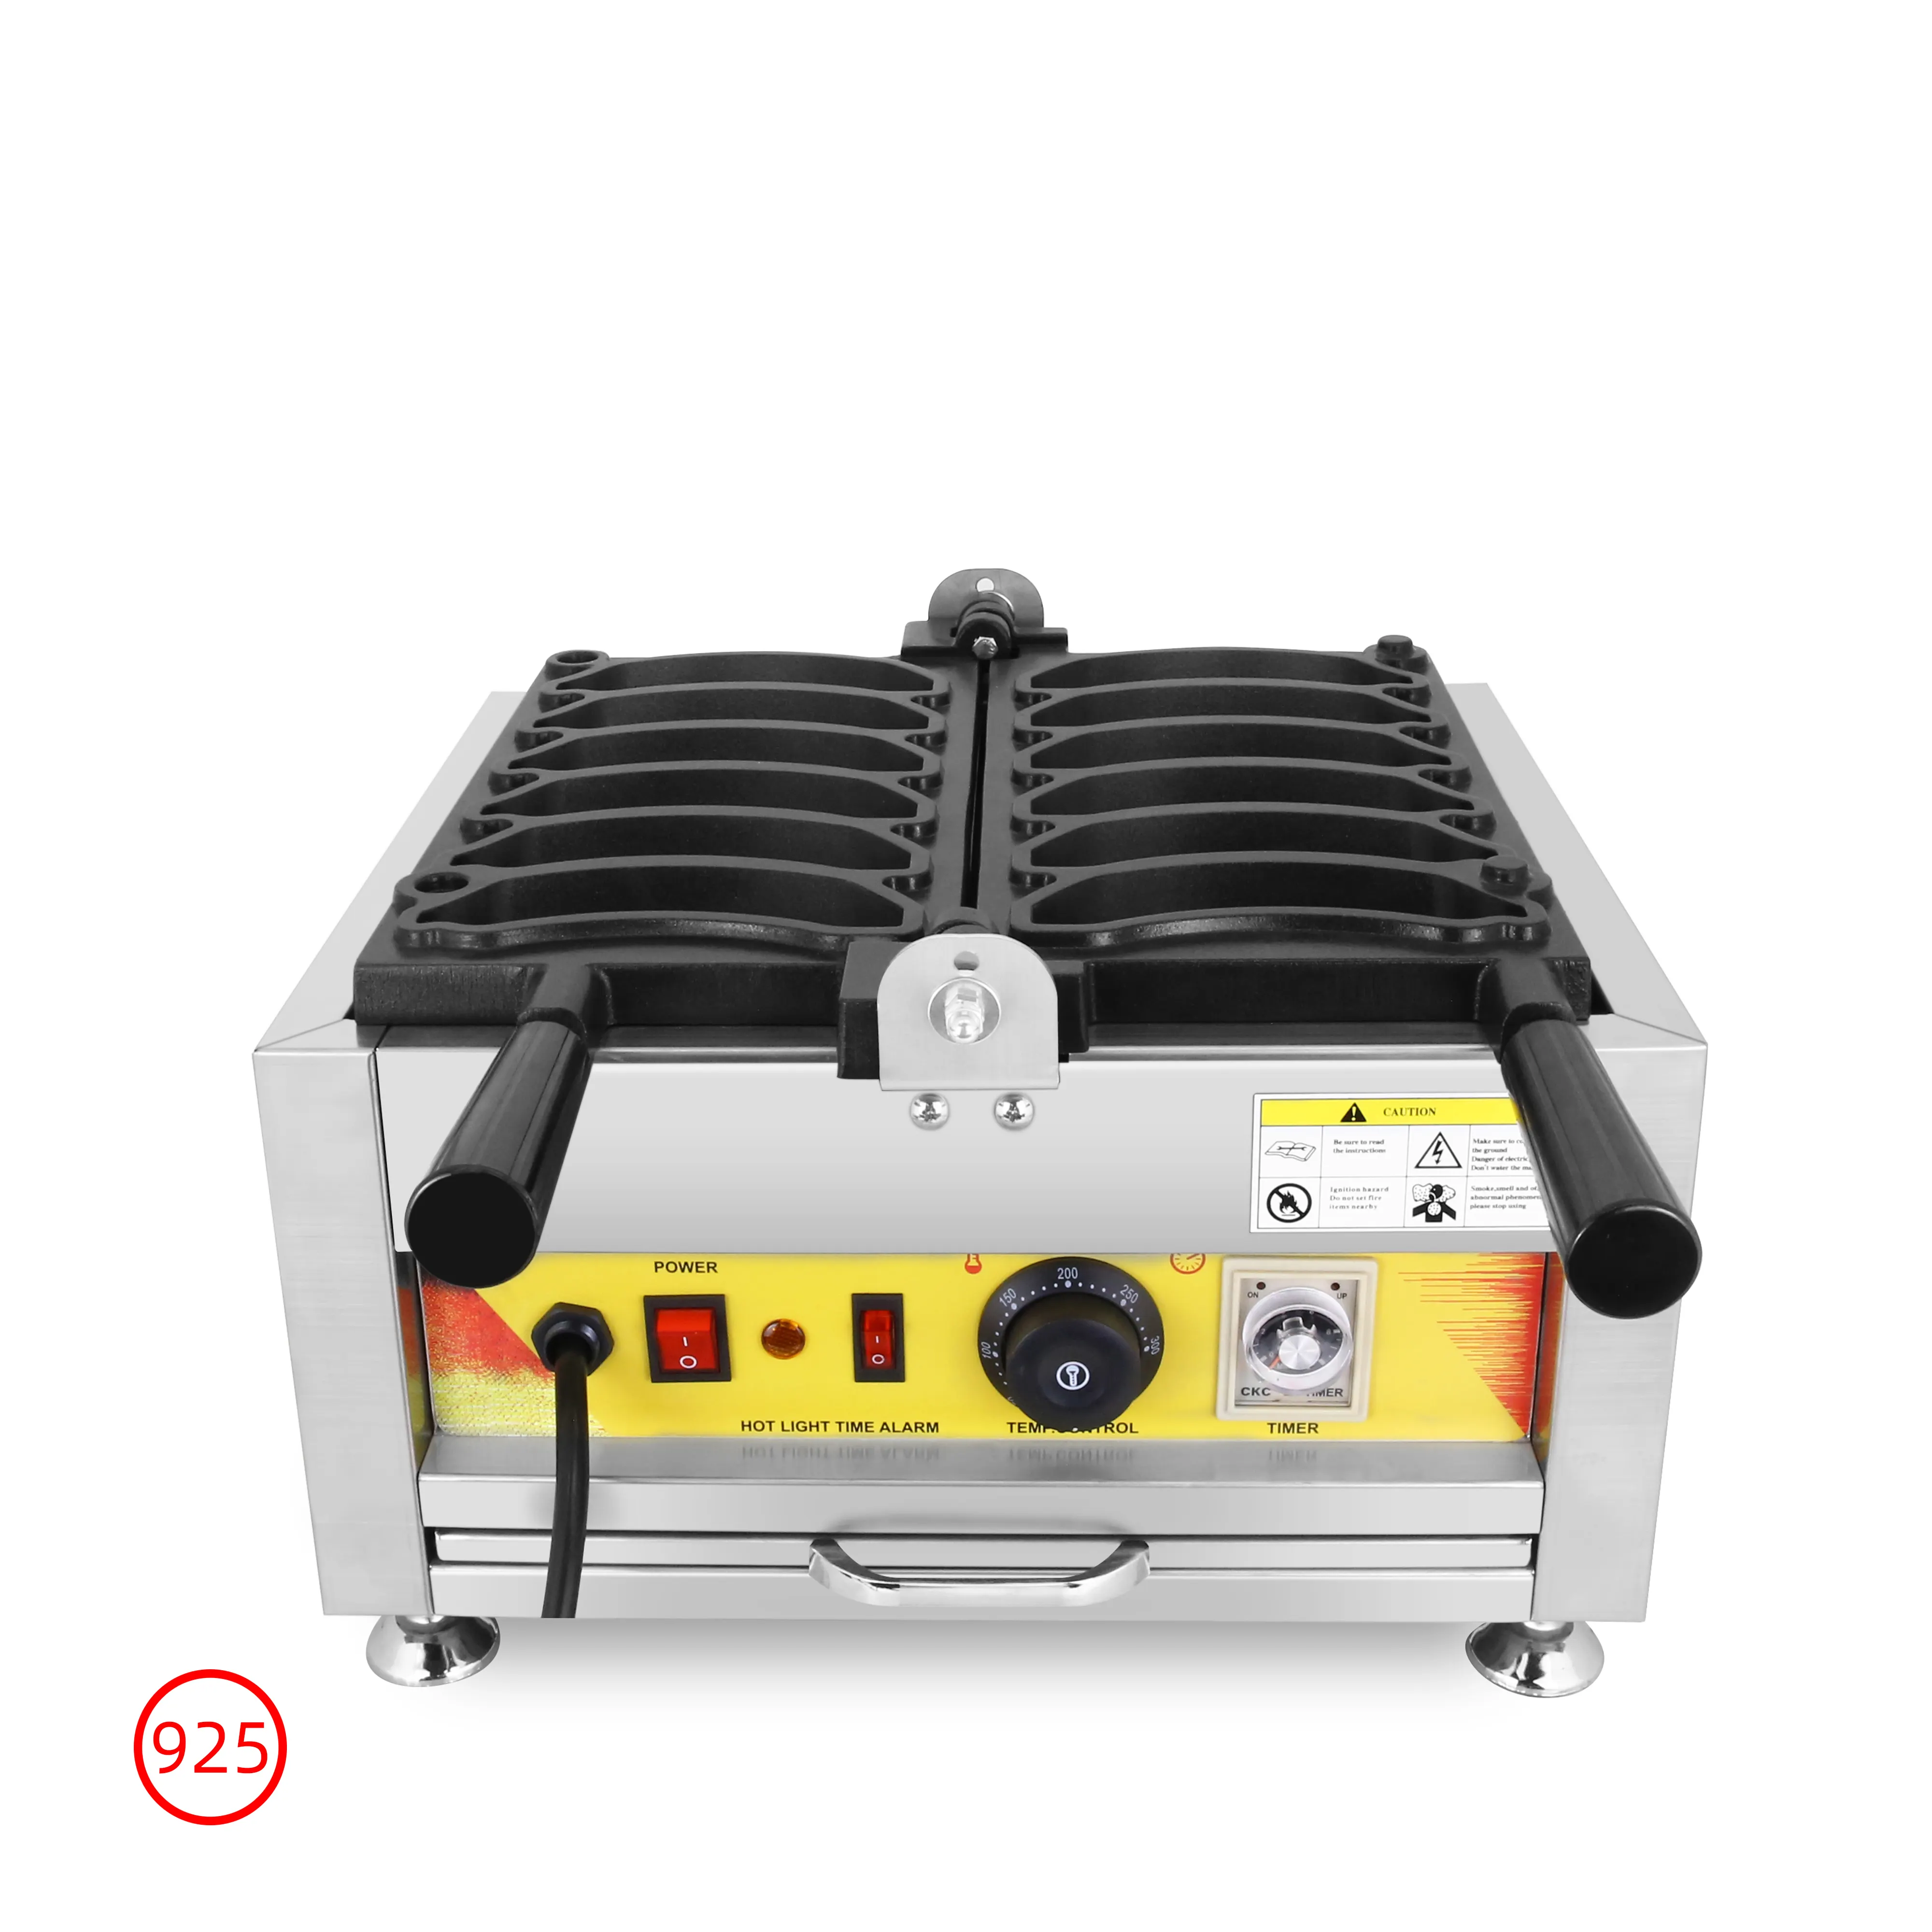 Máquina de waffles elétrica de material de aço inoxidável de qualidade alimentar, resistente a altas temperaturas e corrosão